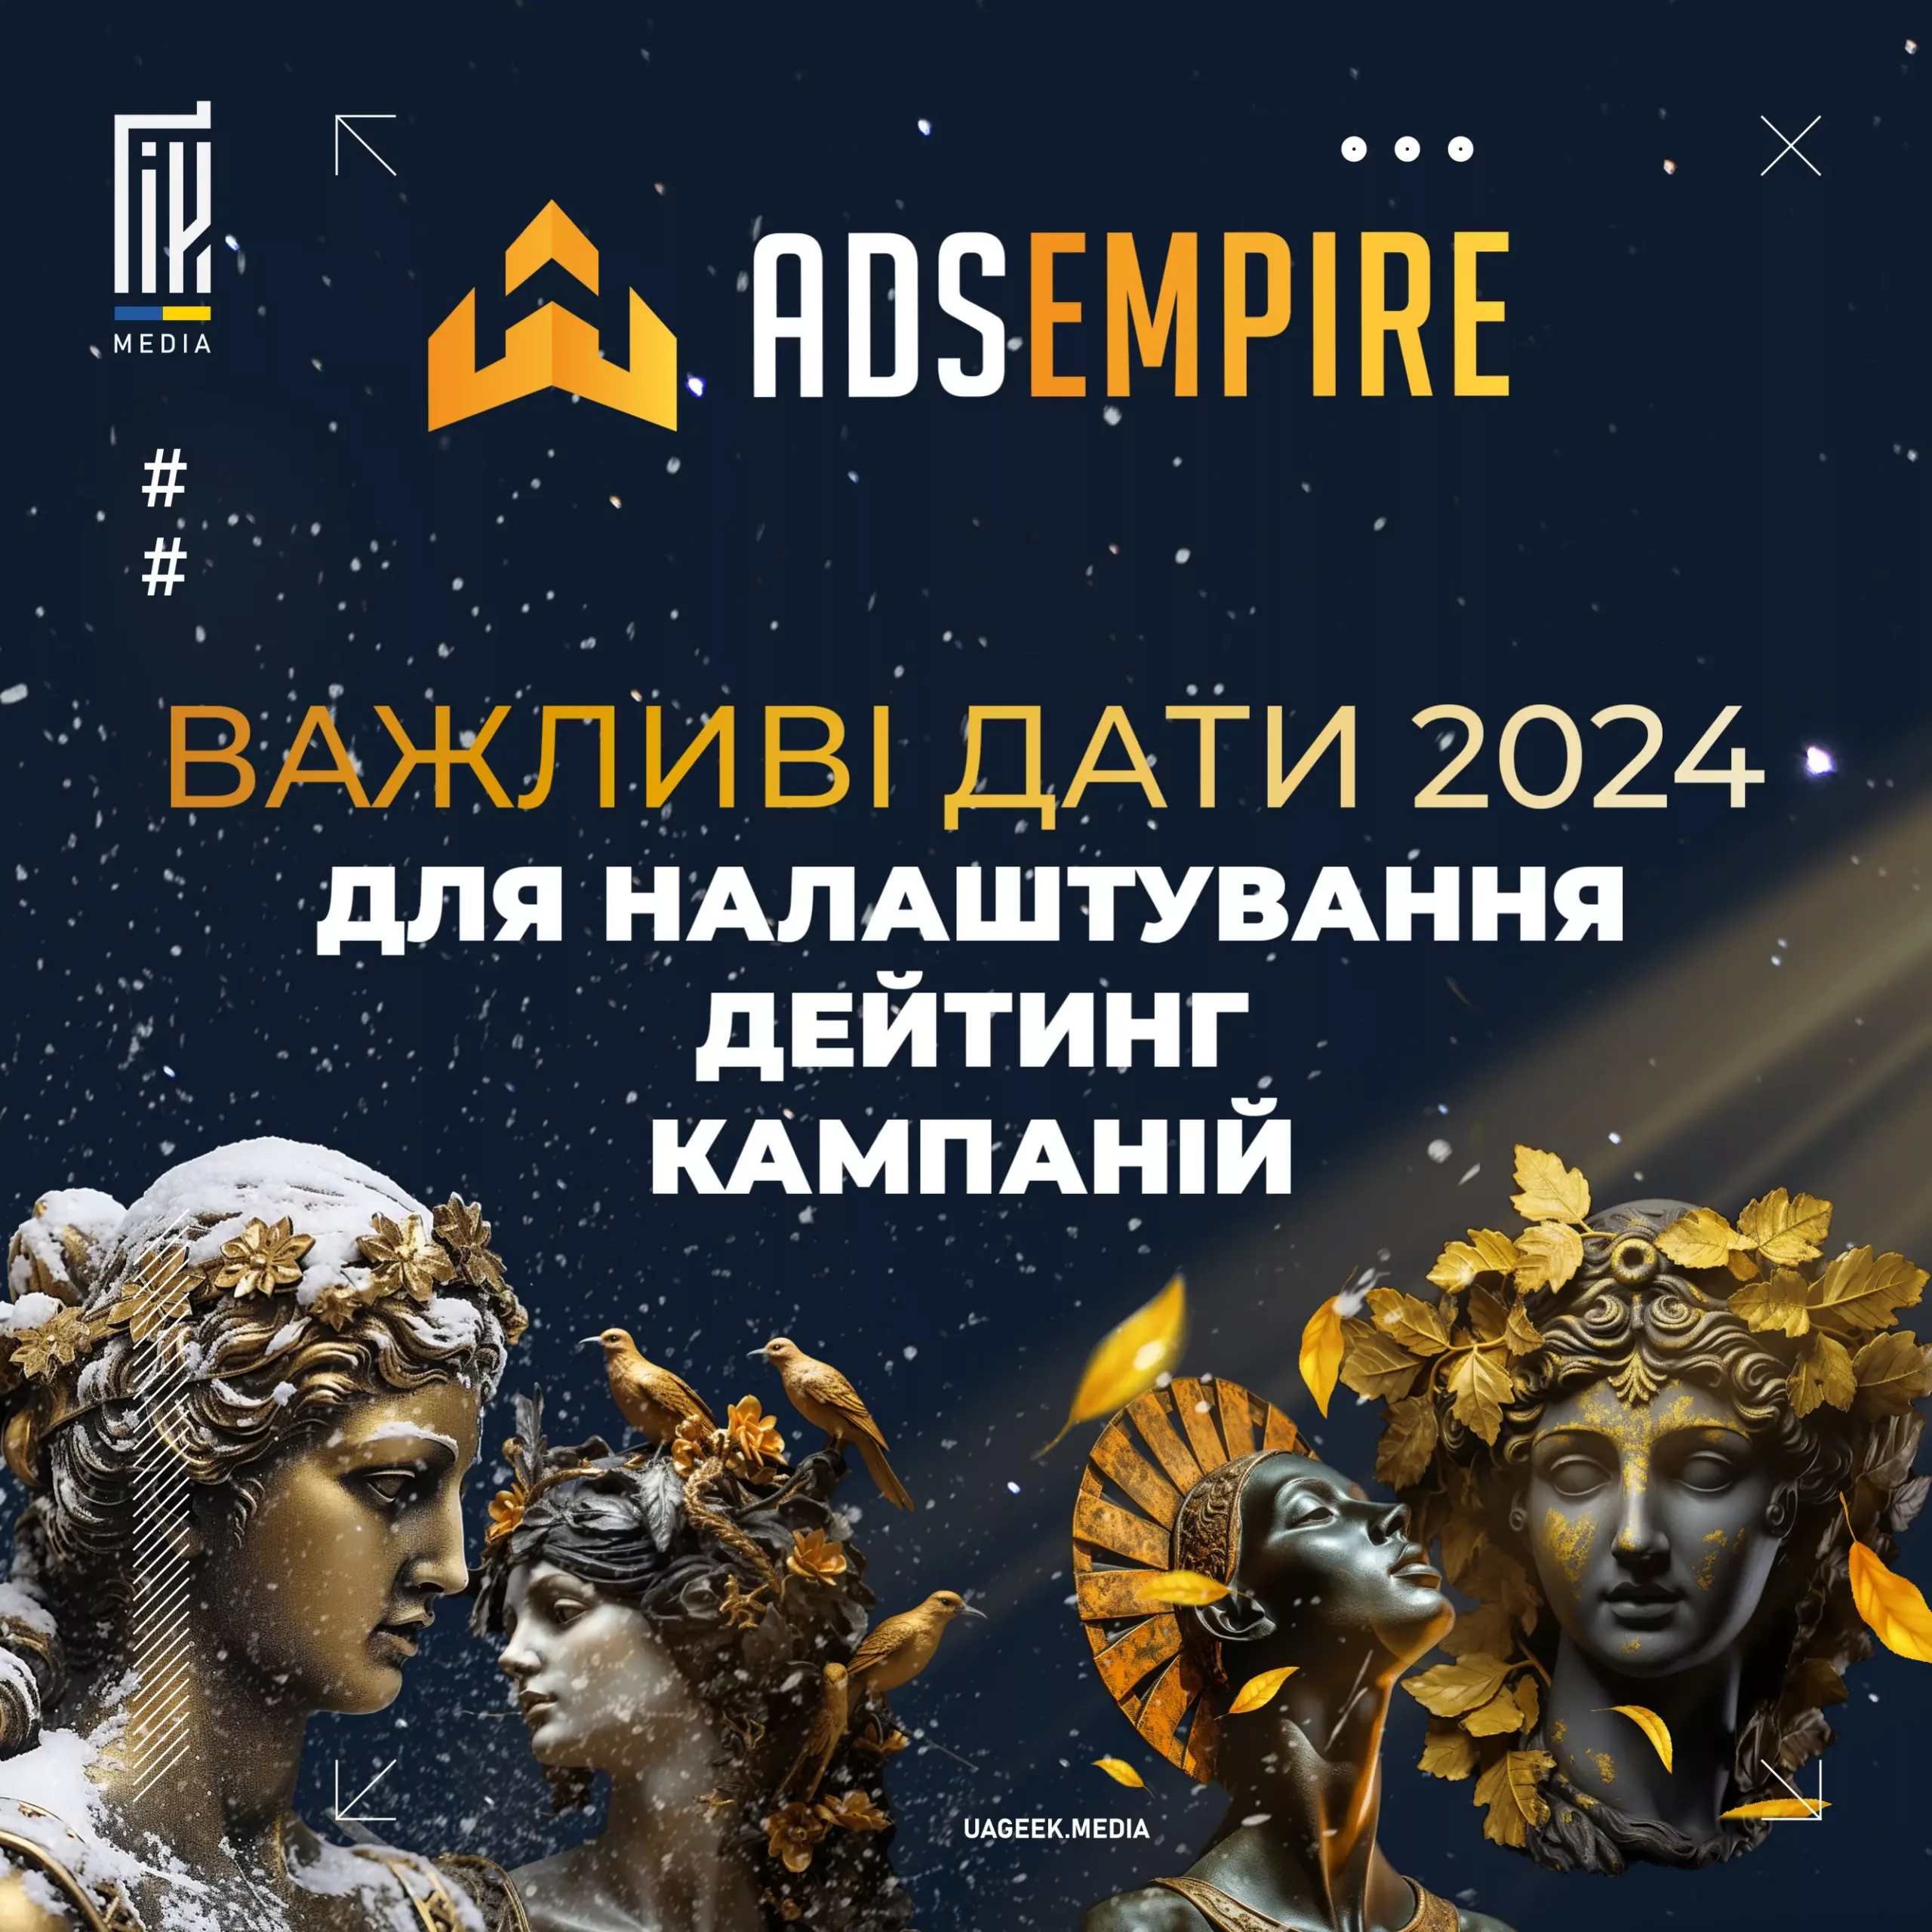 Банер з зображенням класичних статуй, прикрашених золотими листками, на темному космічному фоні з логотипом ADSEMPIRE та текстом "ВАЖЛИВІ ДАТИ 2024 ДЛЯ НАЛАШТУВАННЯ ДЕЙТИНГ КАМПАНІЙ"